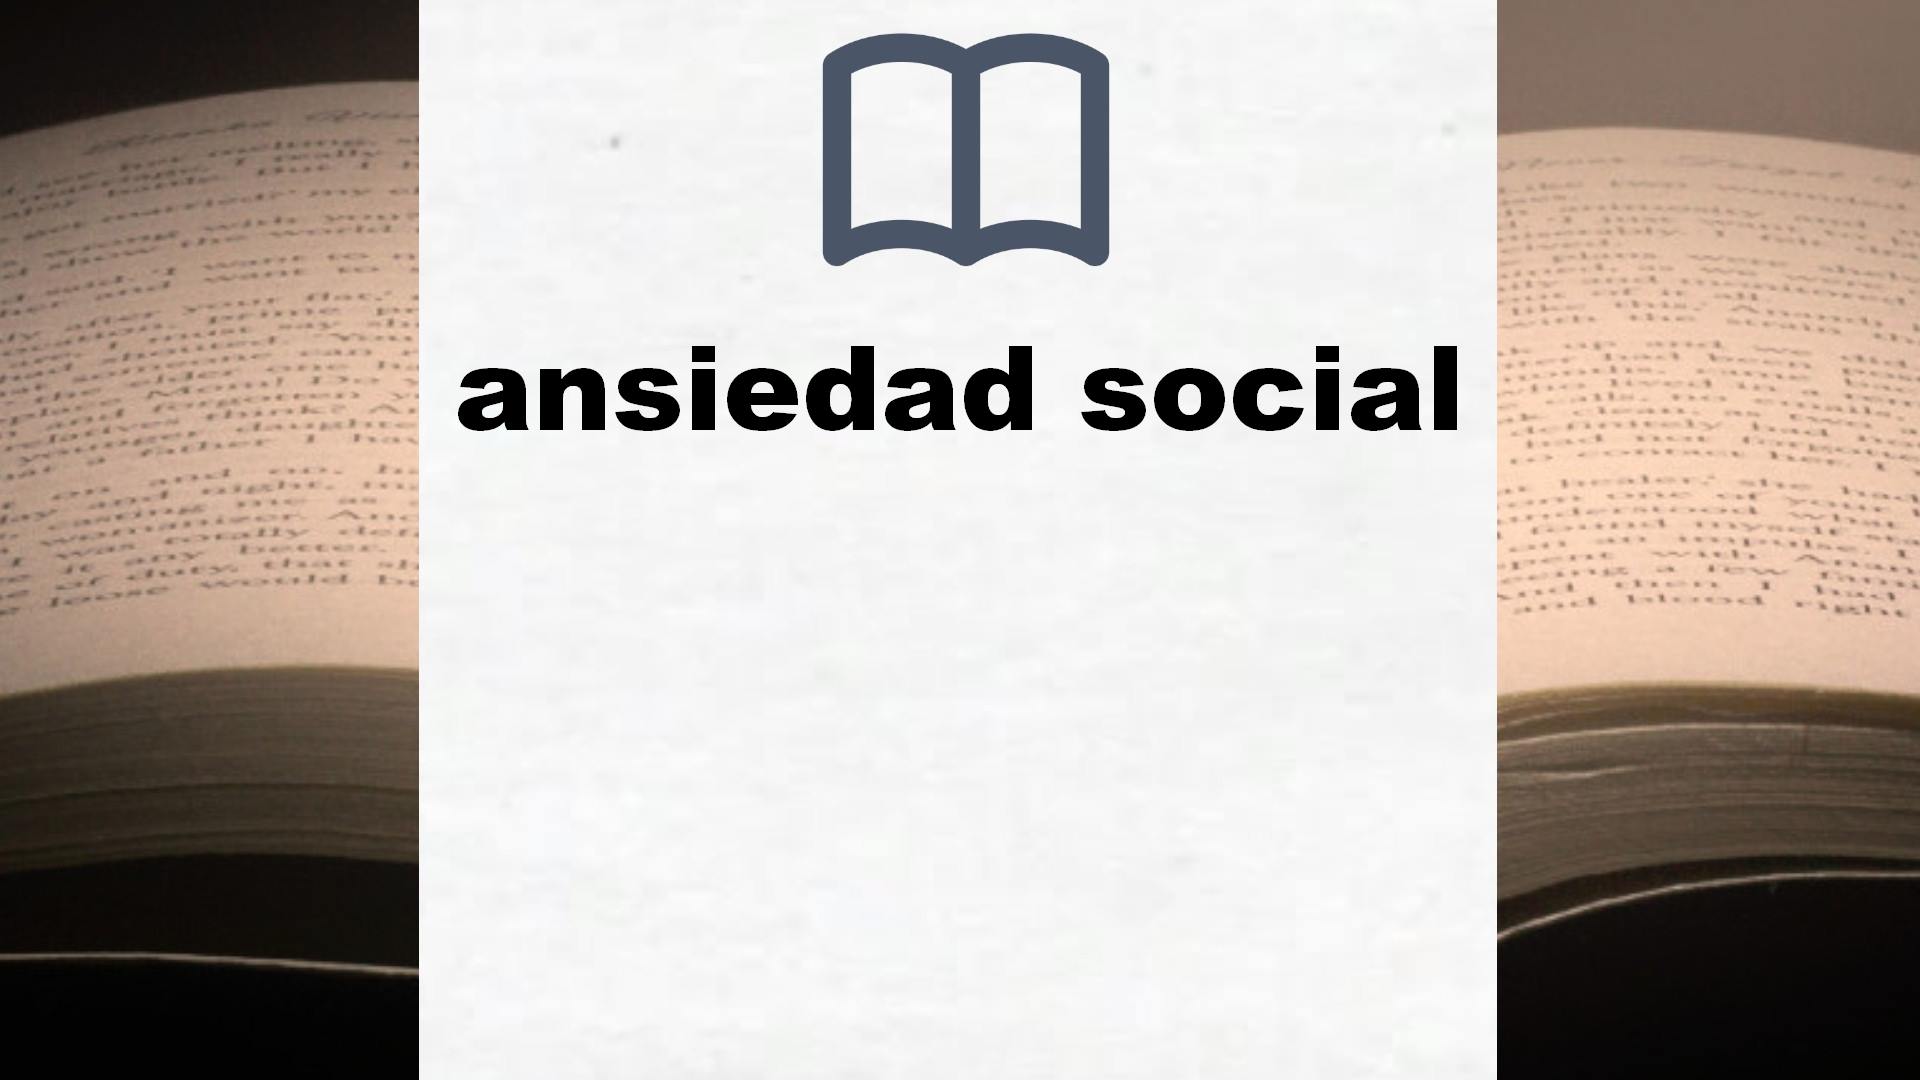 Libros sobre ansiedad social